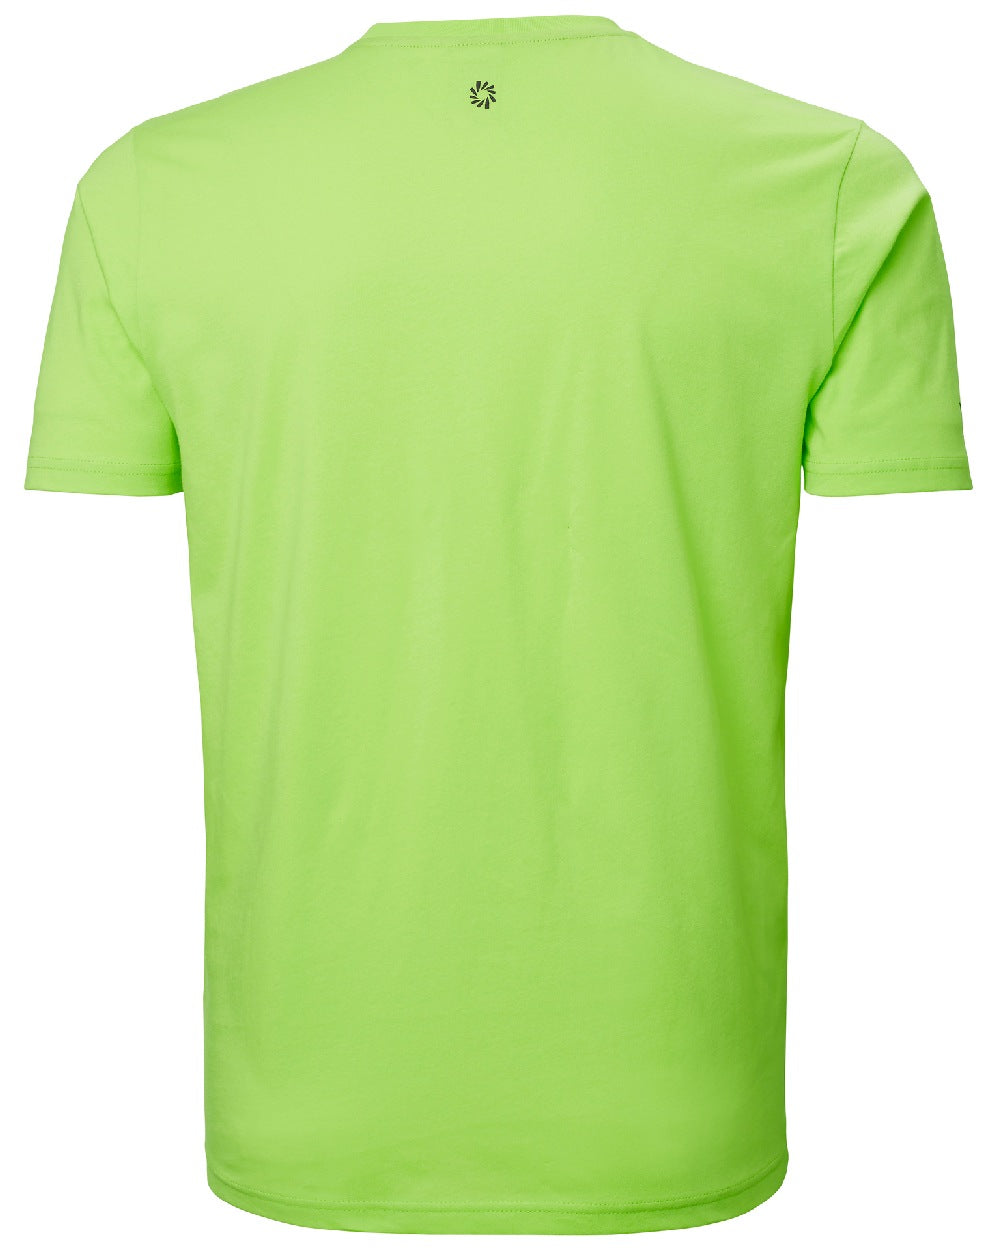 Sharp Green coloured Helly Hansen Mens Ocean Race T-Shirt on white background 